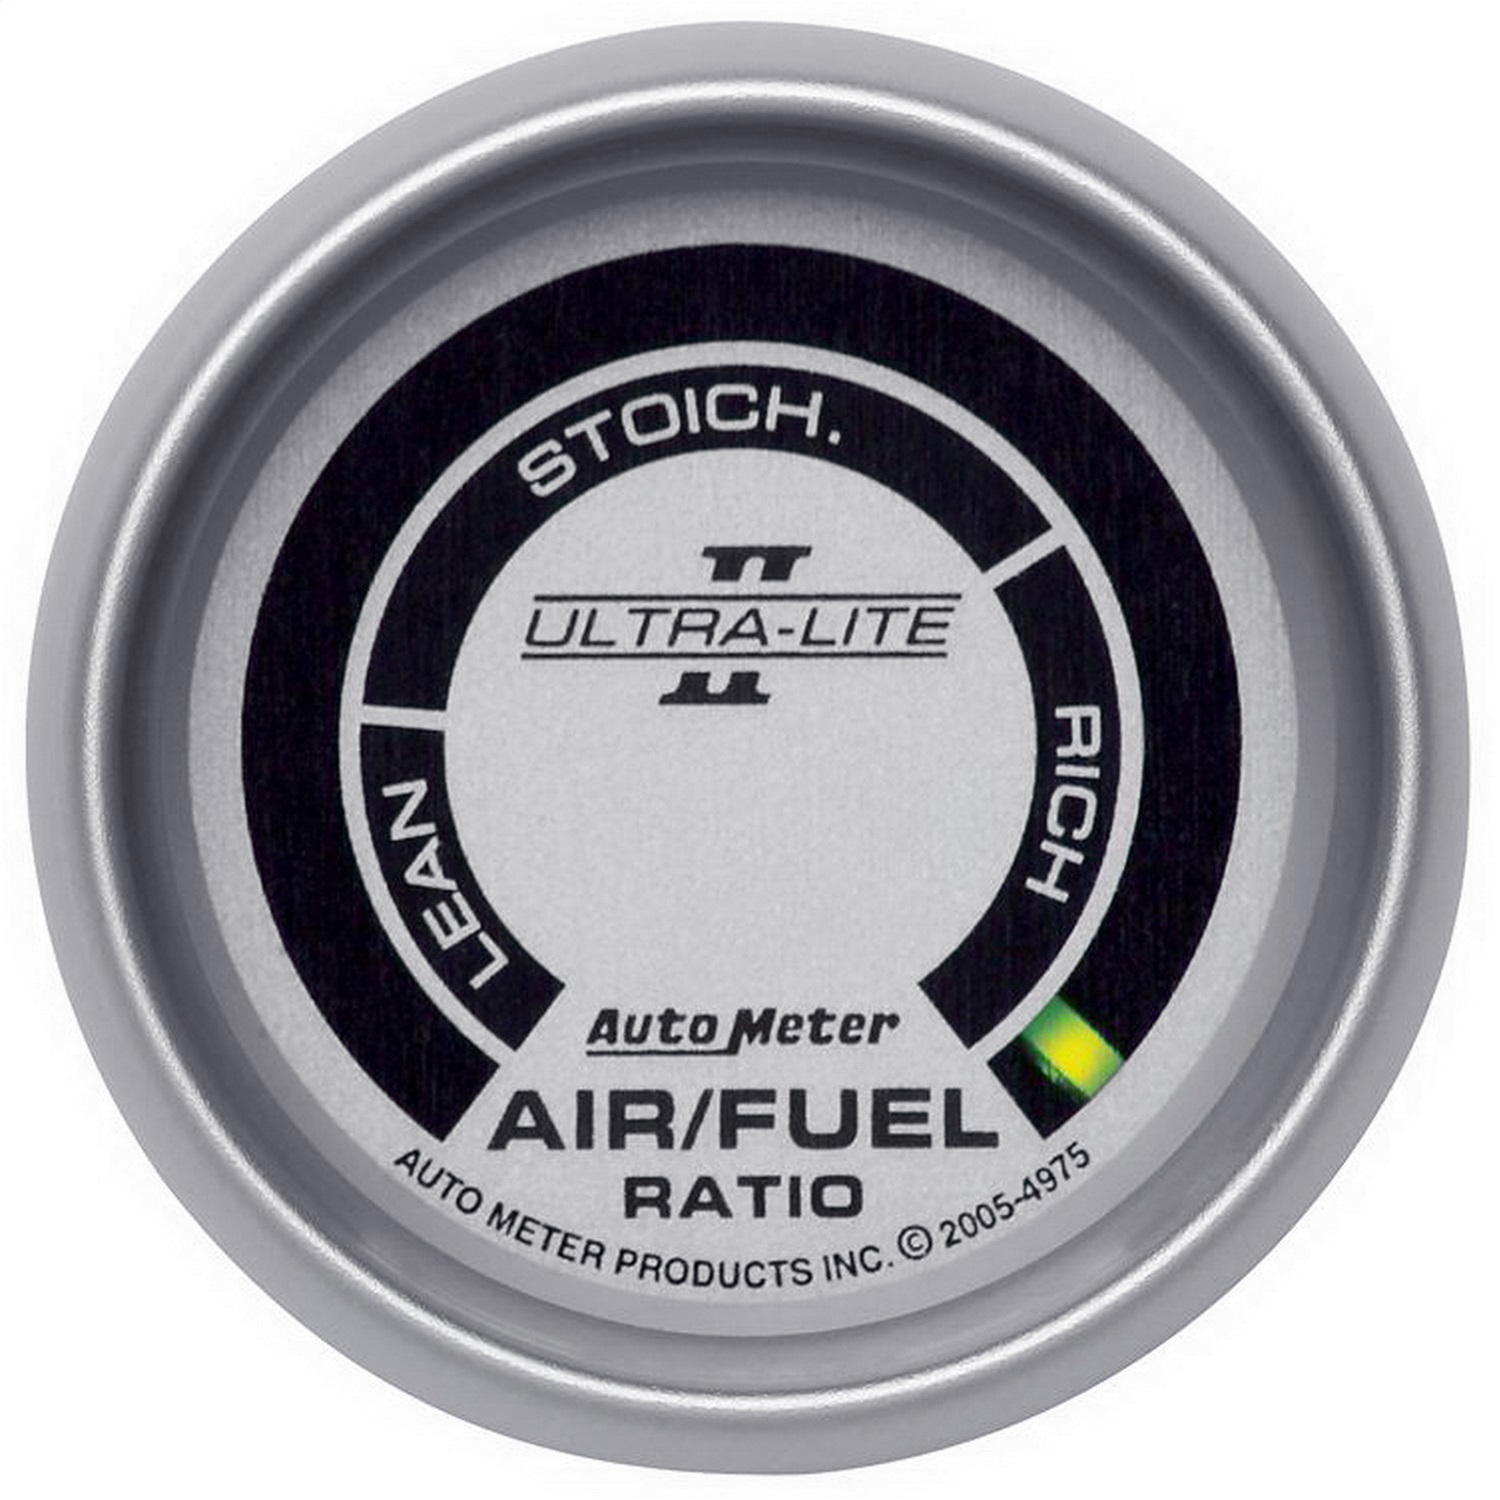 Auto Meter Auto Meter 4975 Ultra-Lite II; Electric Air Fuel Ratio Gauge